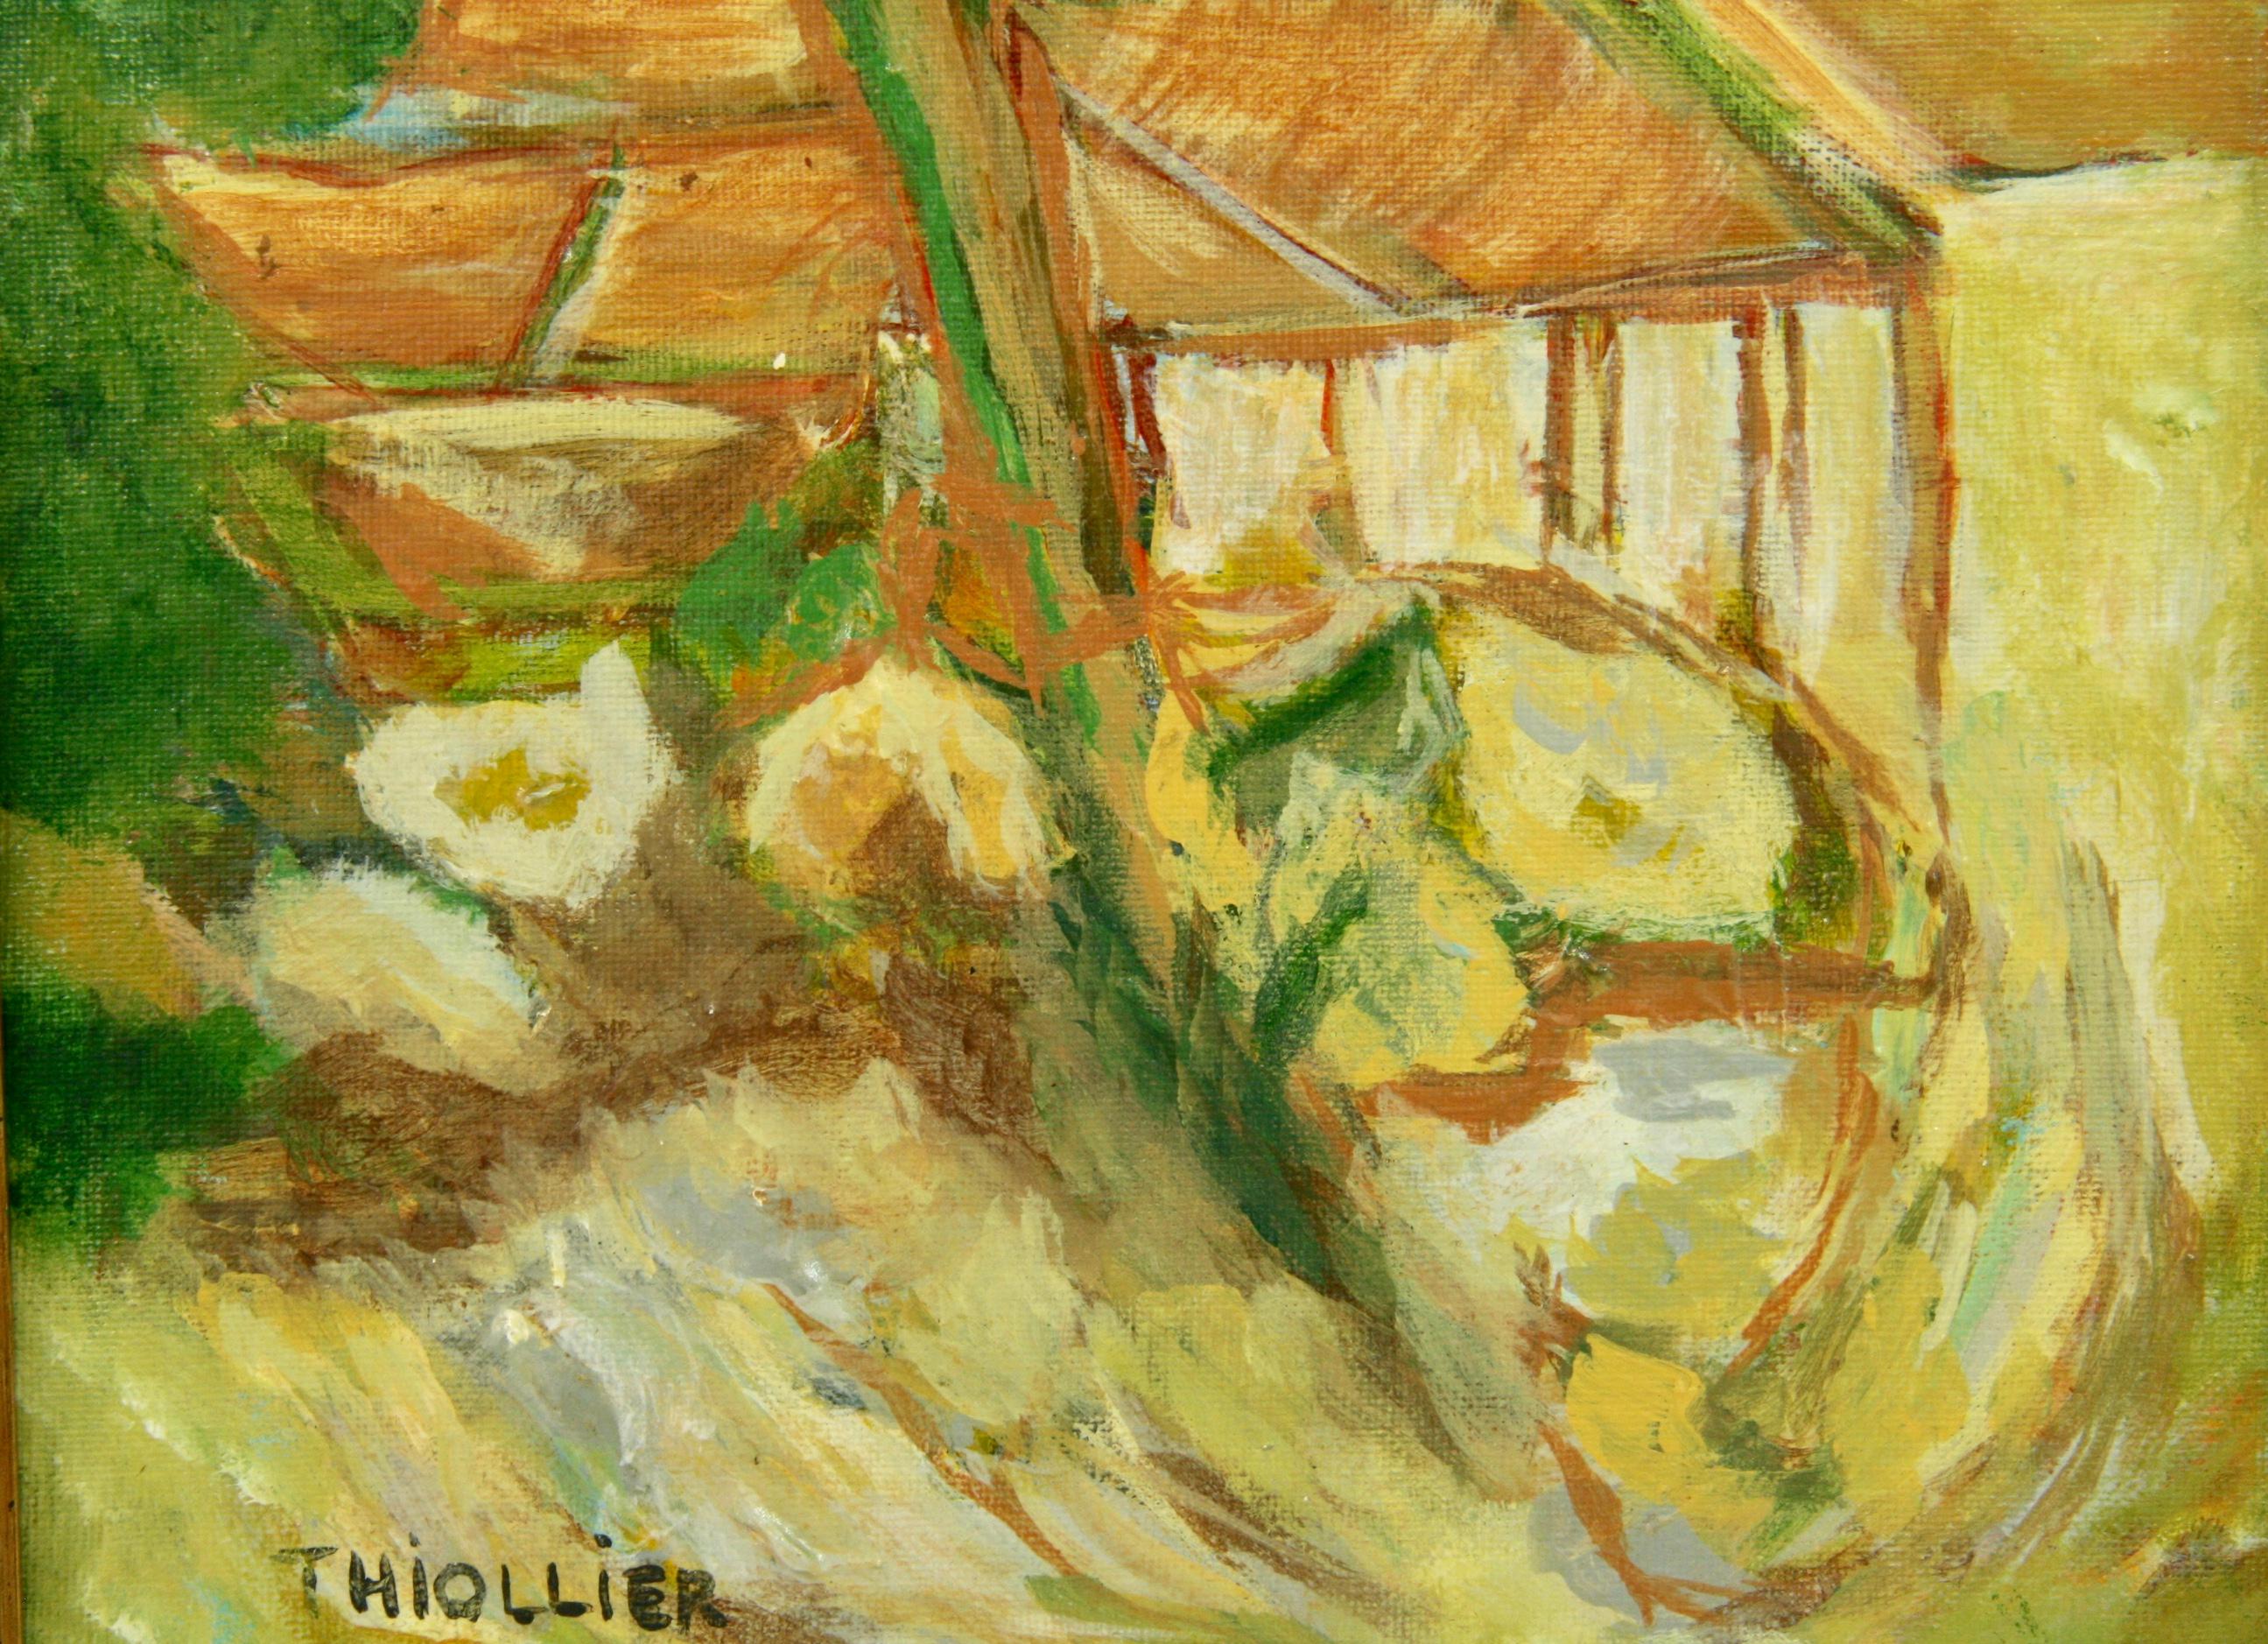 5-3548 Paysage de style impressionniste d'un village français avec ses toits
Dans un cadre en bois vintage
Taille de l'image 11.5x8.75